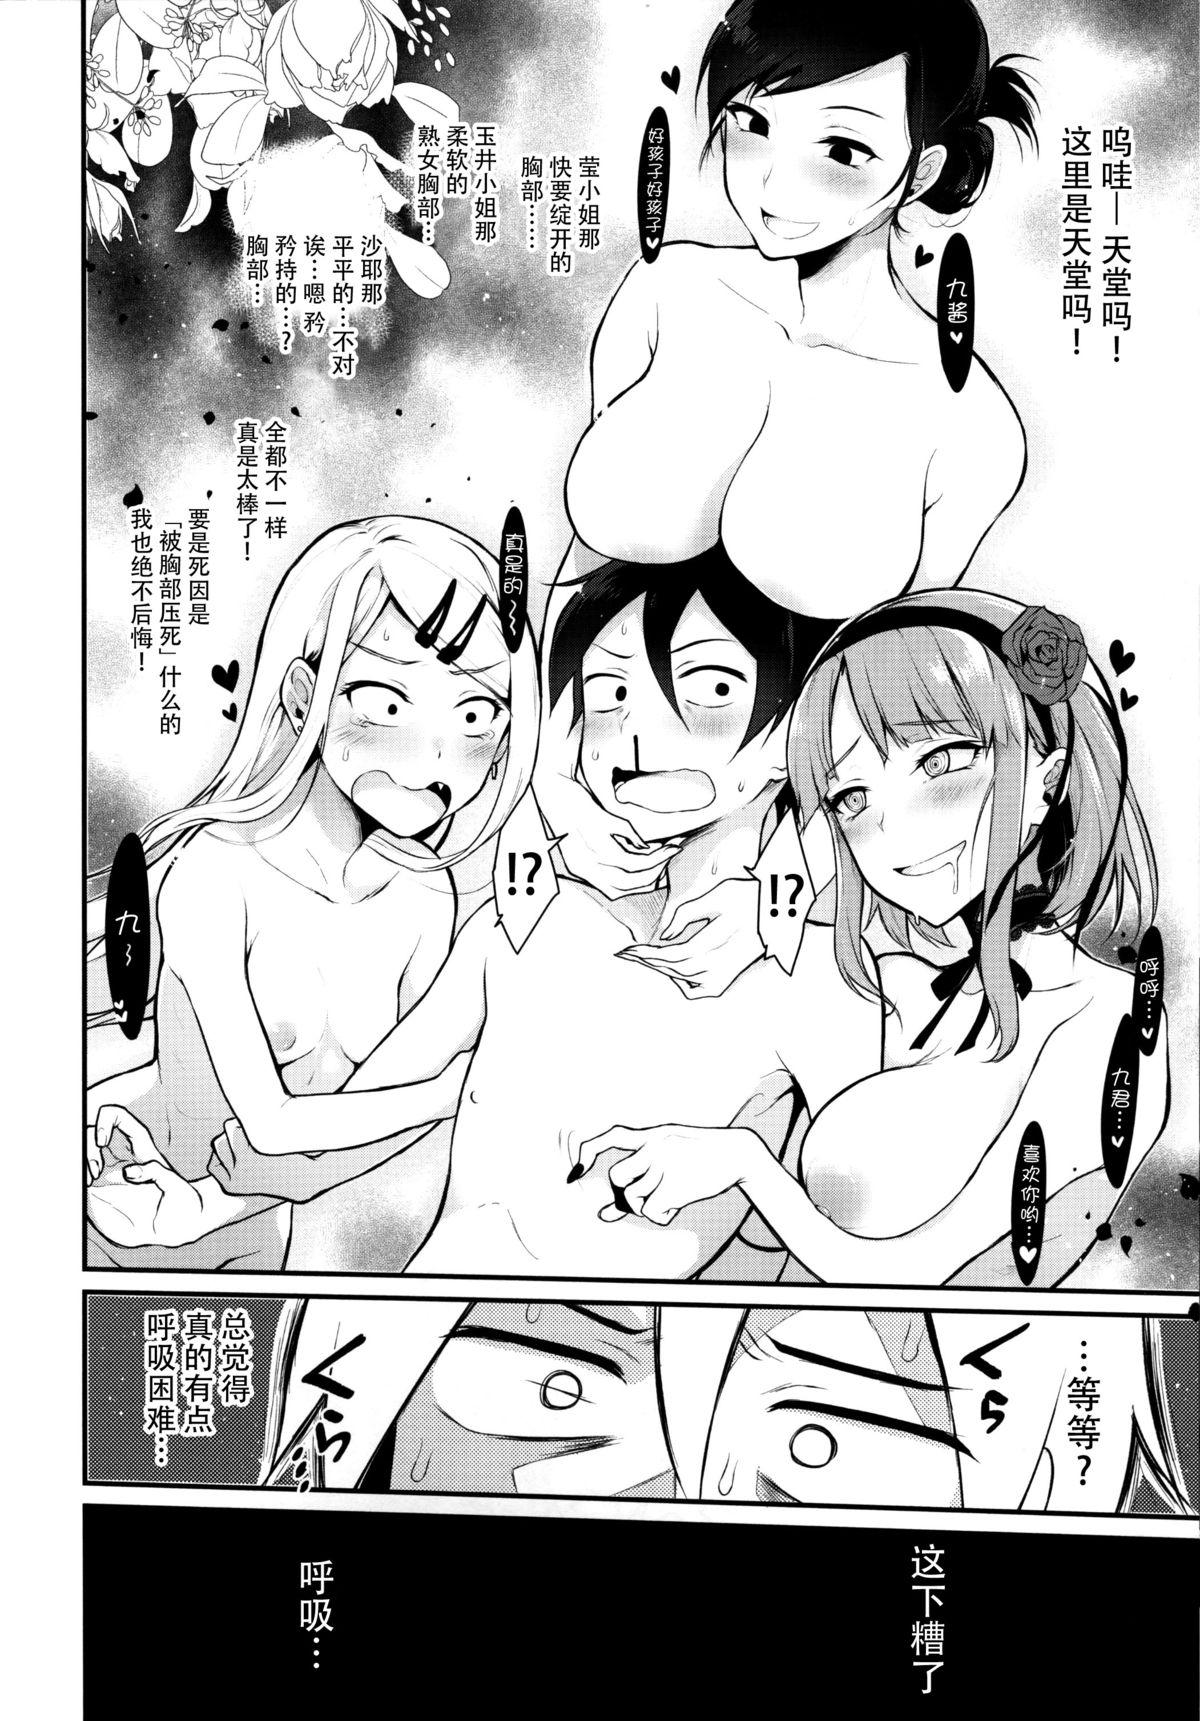 Dicksucking Otona no Dagashi 3 - Dagashi kashi High - Page 7